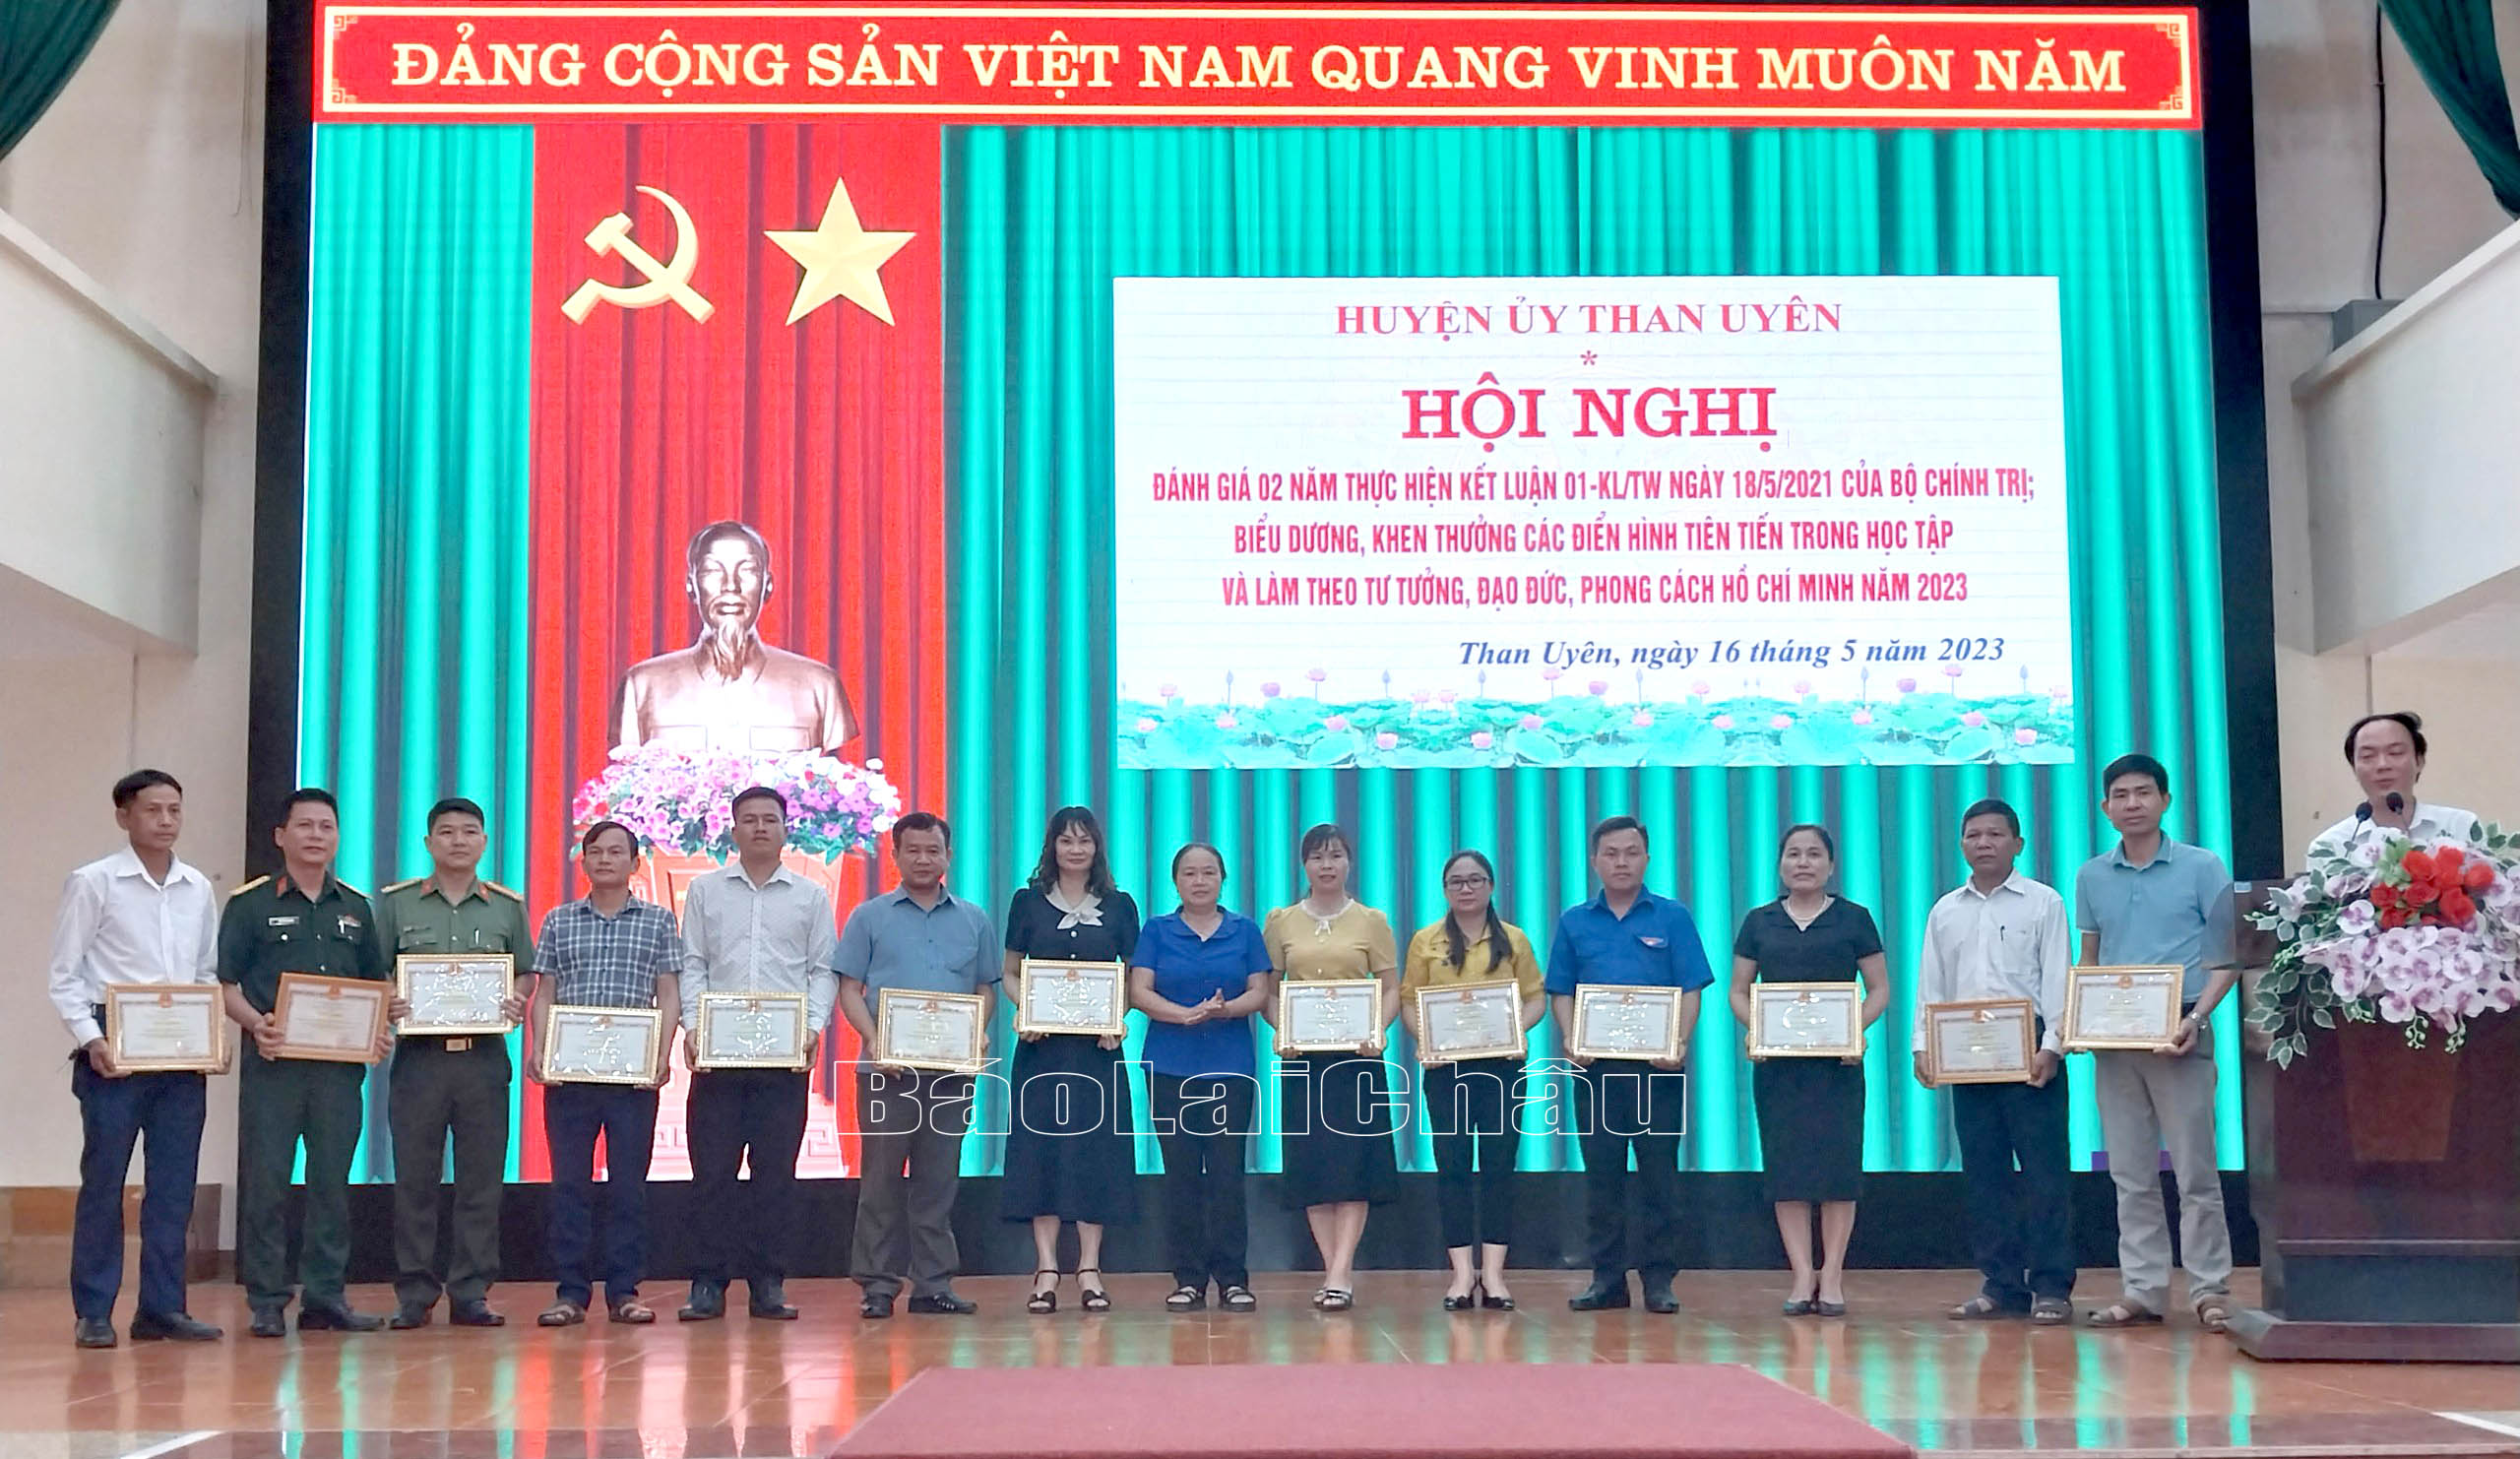 Đồng chí Lê Thị Kim Ngân – Phó Bí thư Thường trực Huyện ủy trao giấy khen cho các tập thể có thành tích tiêu biểu trong học tập và làm theo tư tưởng, đạo đức, phong cách Hồ Chí Minh năm 2023.